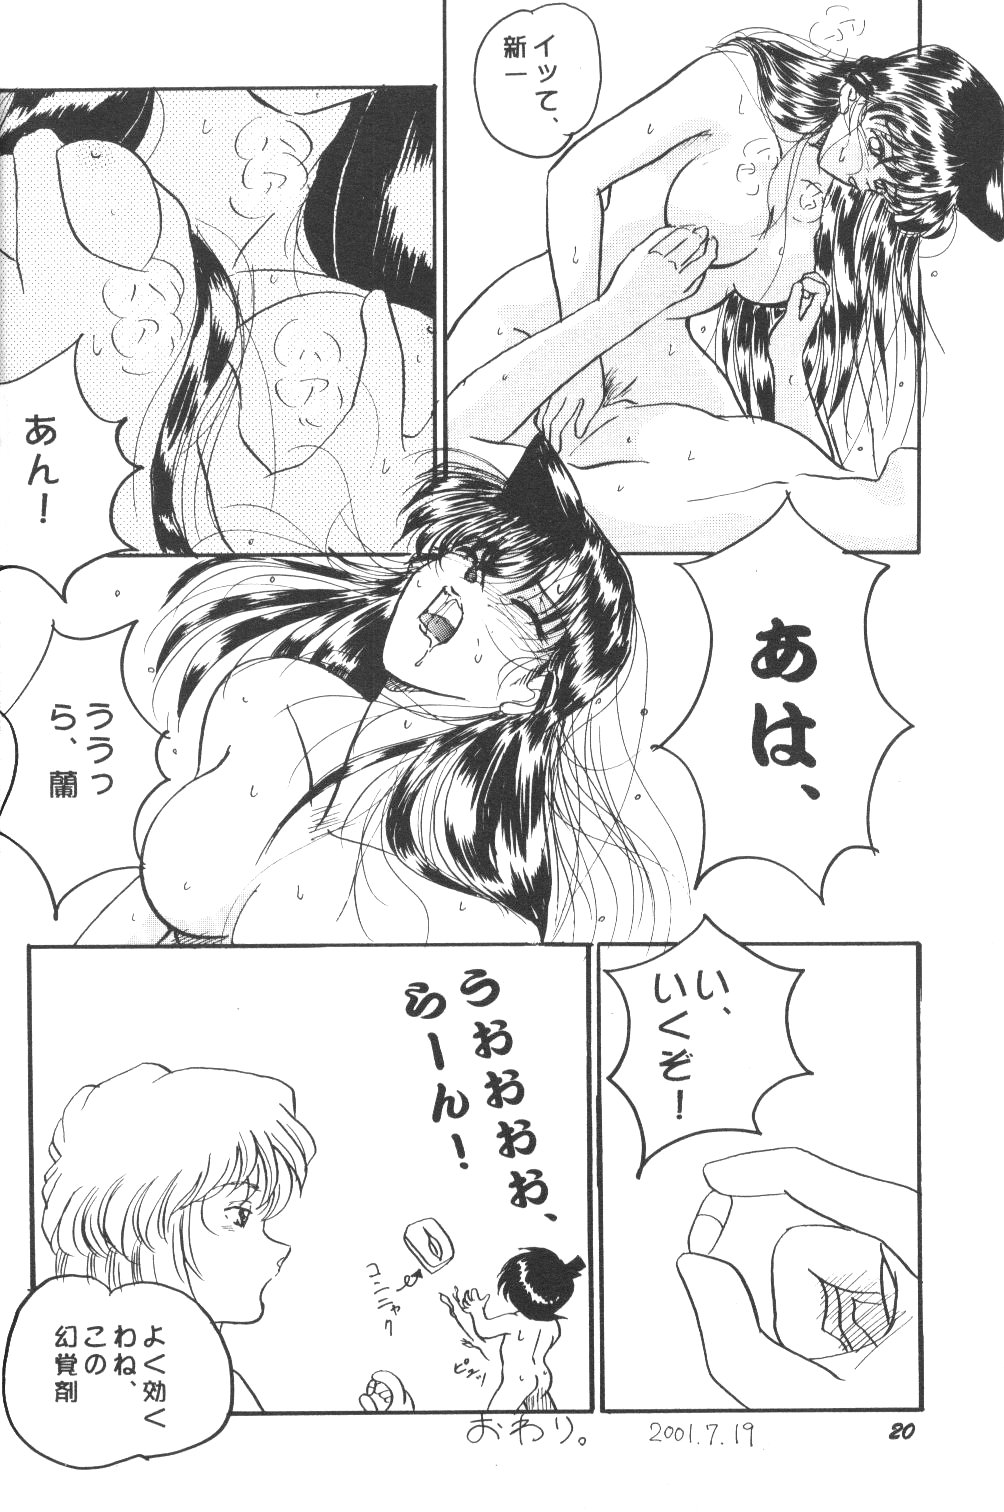 [Studio Boxer (Shima Takashi, Taka)] HOHETO 22 (Detective Conan) page 19 full